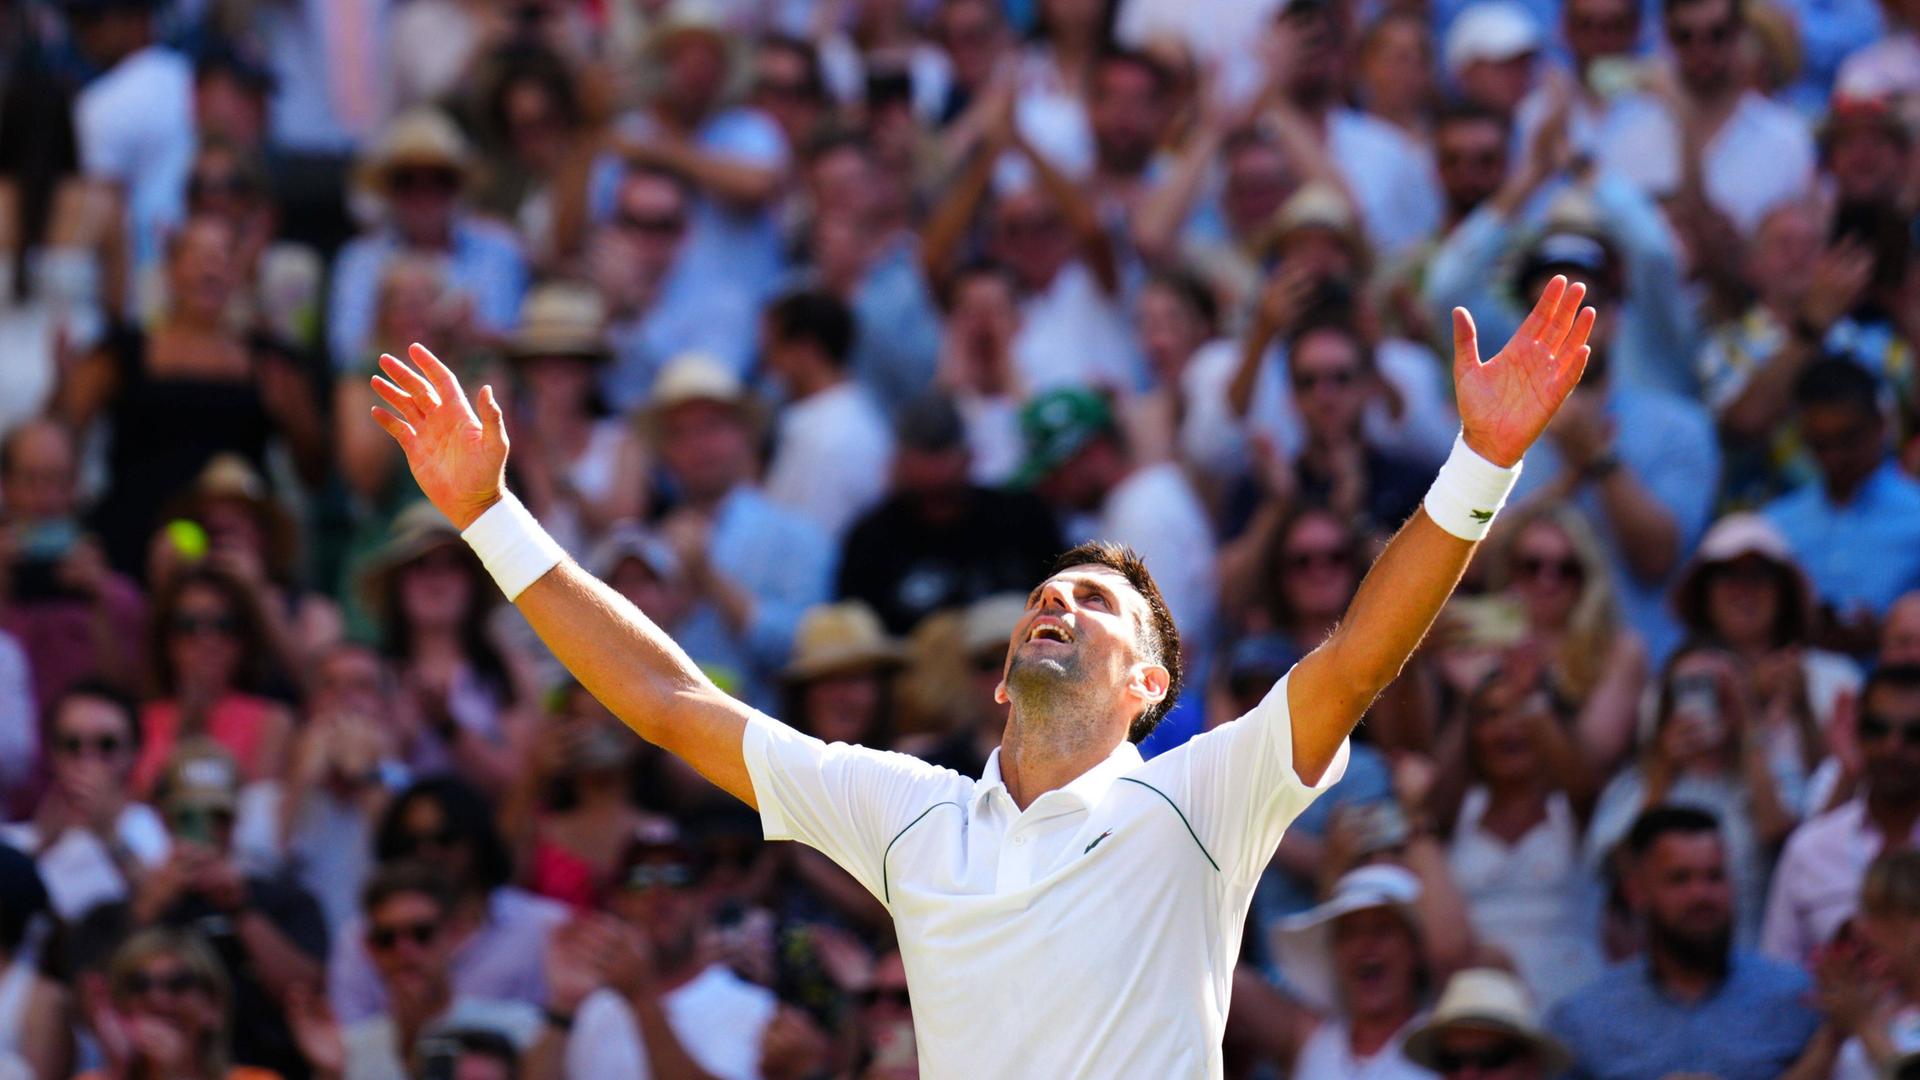 Ein Tennis-Spieler in weißem T-Shirt hebt beide Hände nach oben und jubelt. Im Hintergrund sind zahlreiche Menschen im Publikum zu sehen.